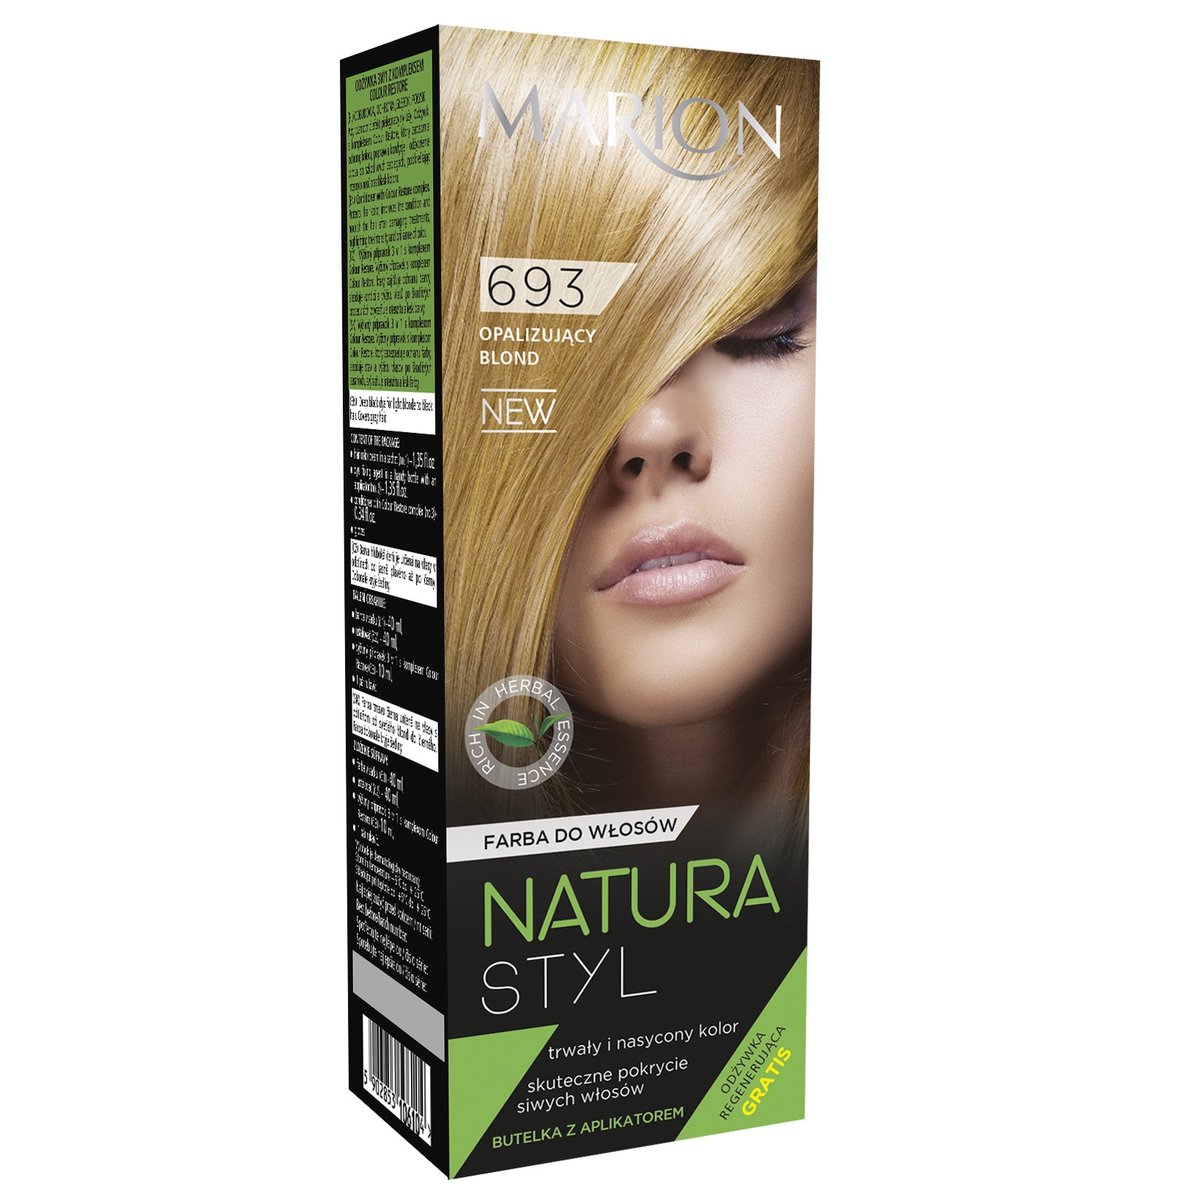 Фото - Фарба для волосся NATURA Marion,  Styl, farba do włosów 693 Opalizujący Blond, 95 ml 